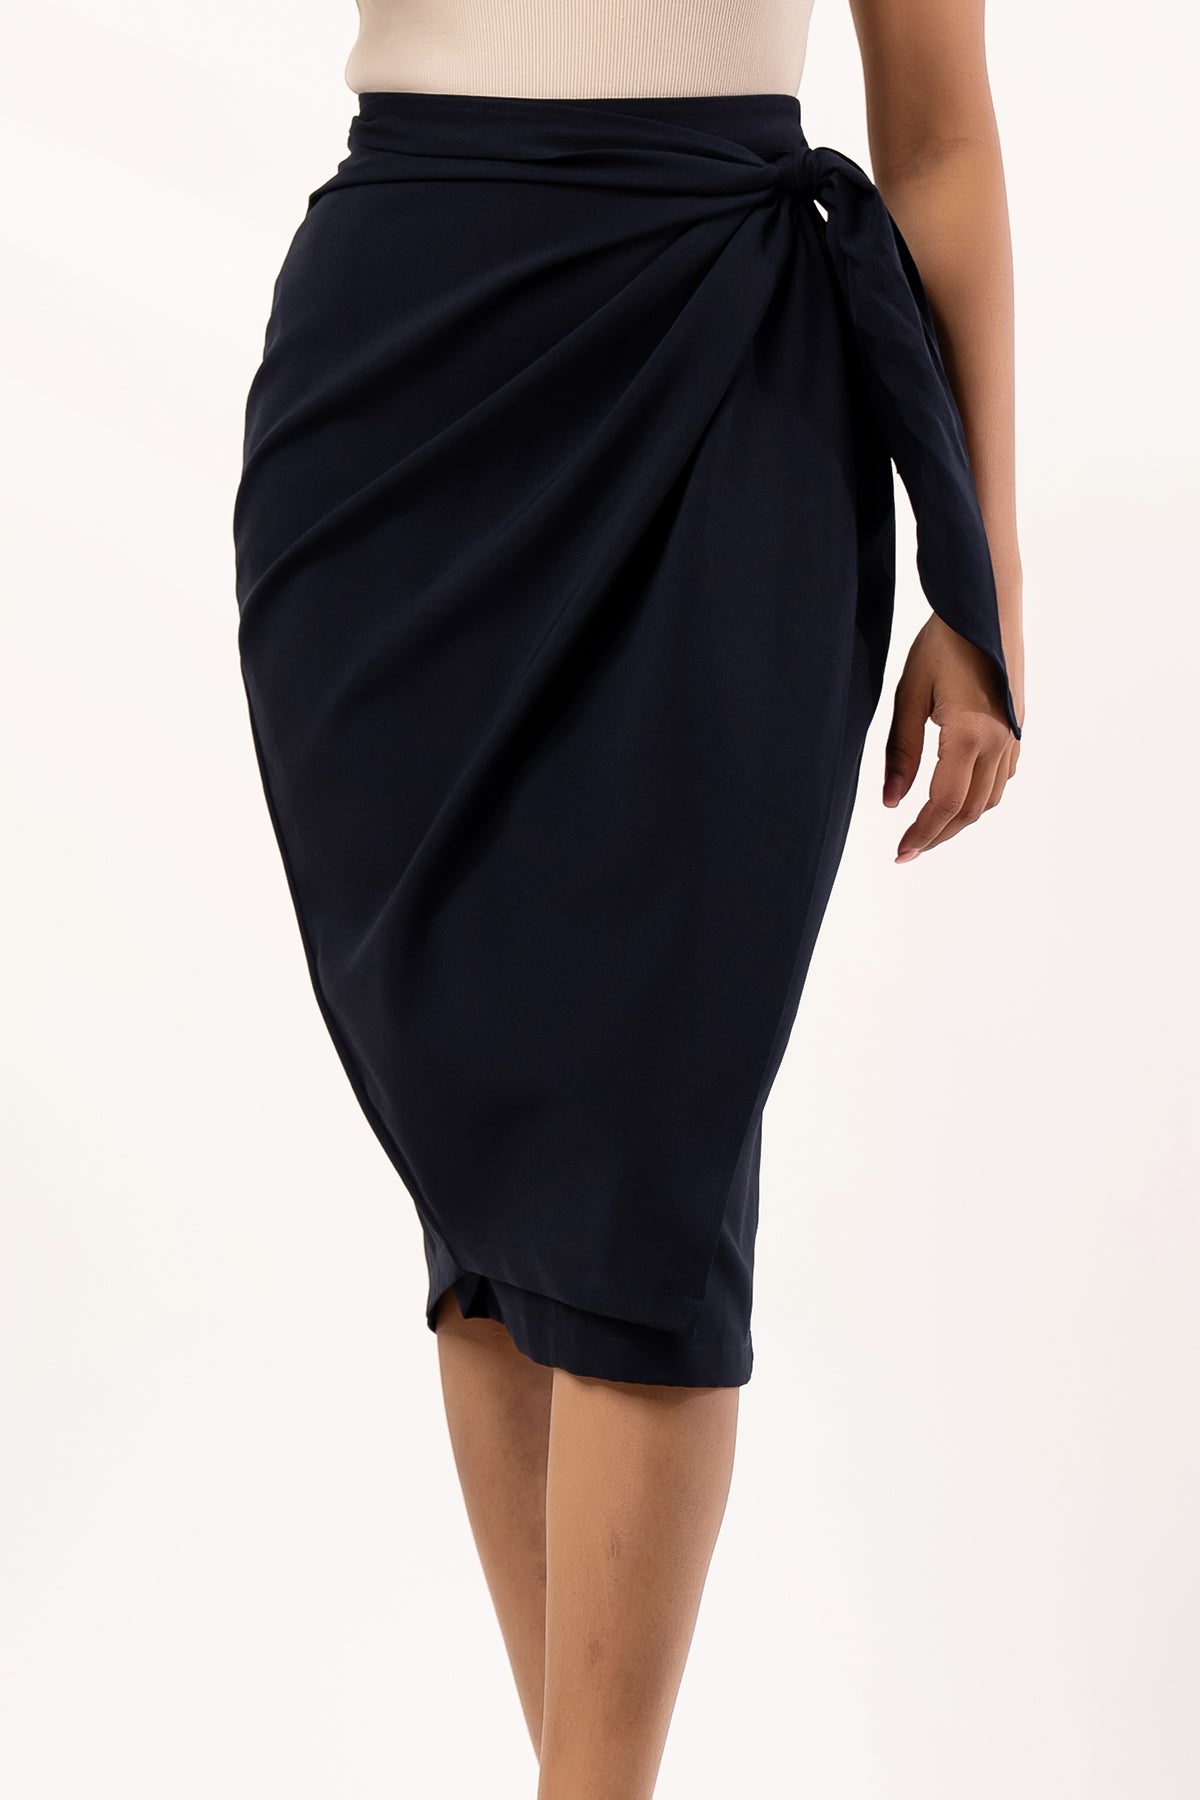 Envogue Women's Knee Length Side Knot Office Skirt